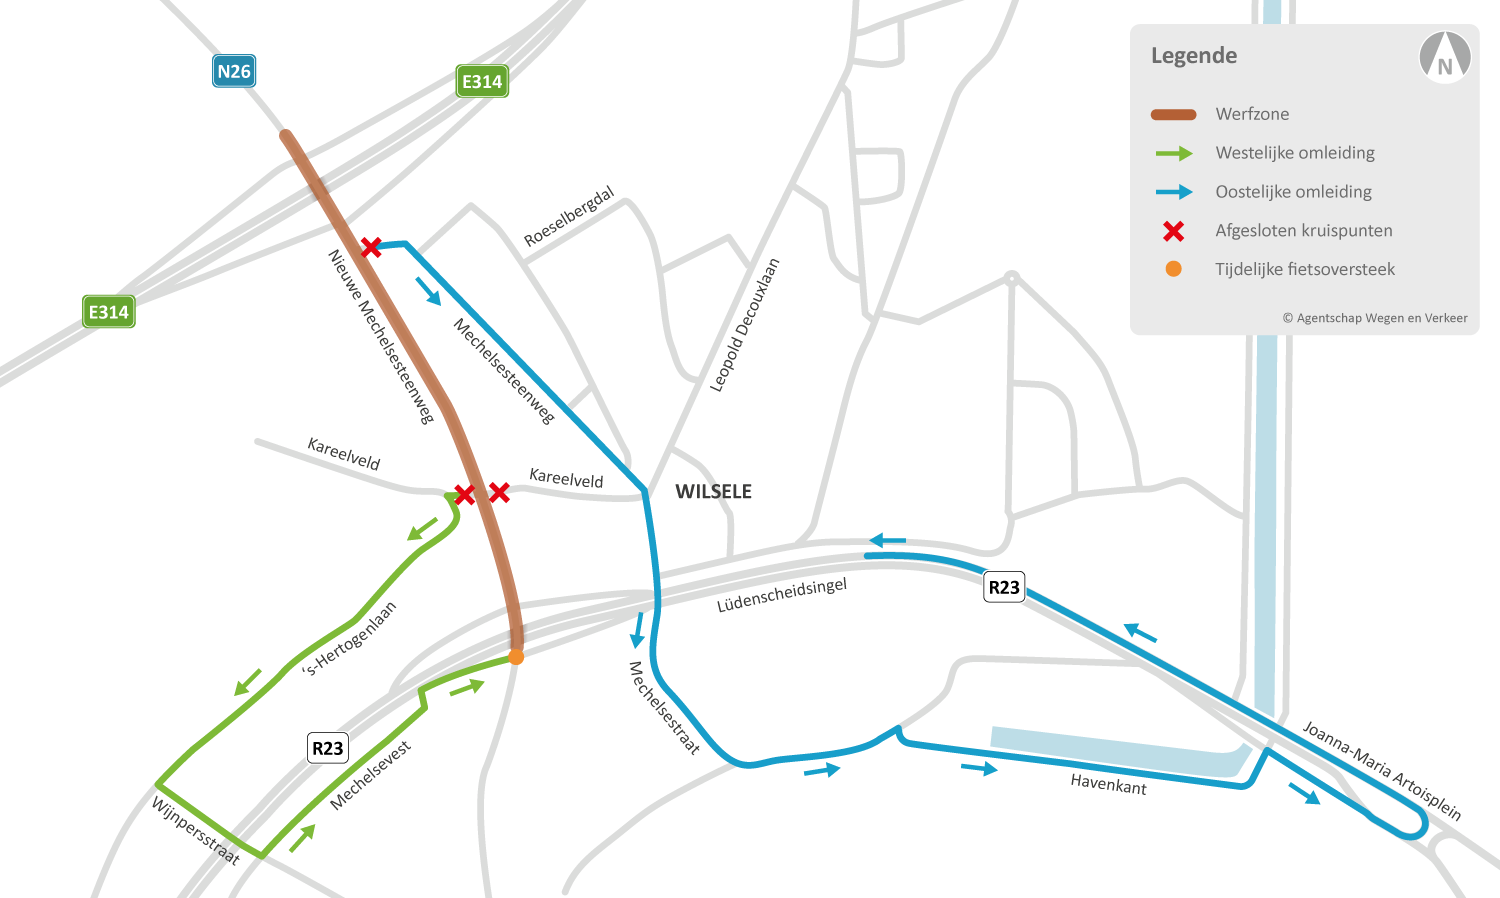 Asfalteringswerken en aanpassingen verkeerslichten Nieuwe Mechelsesteenweg (N26) X E314